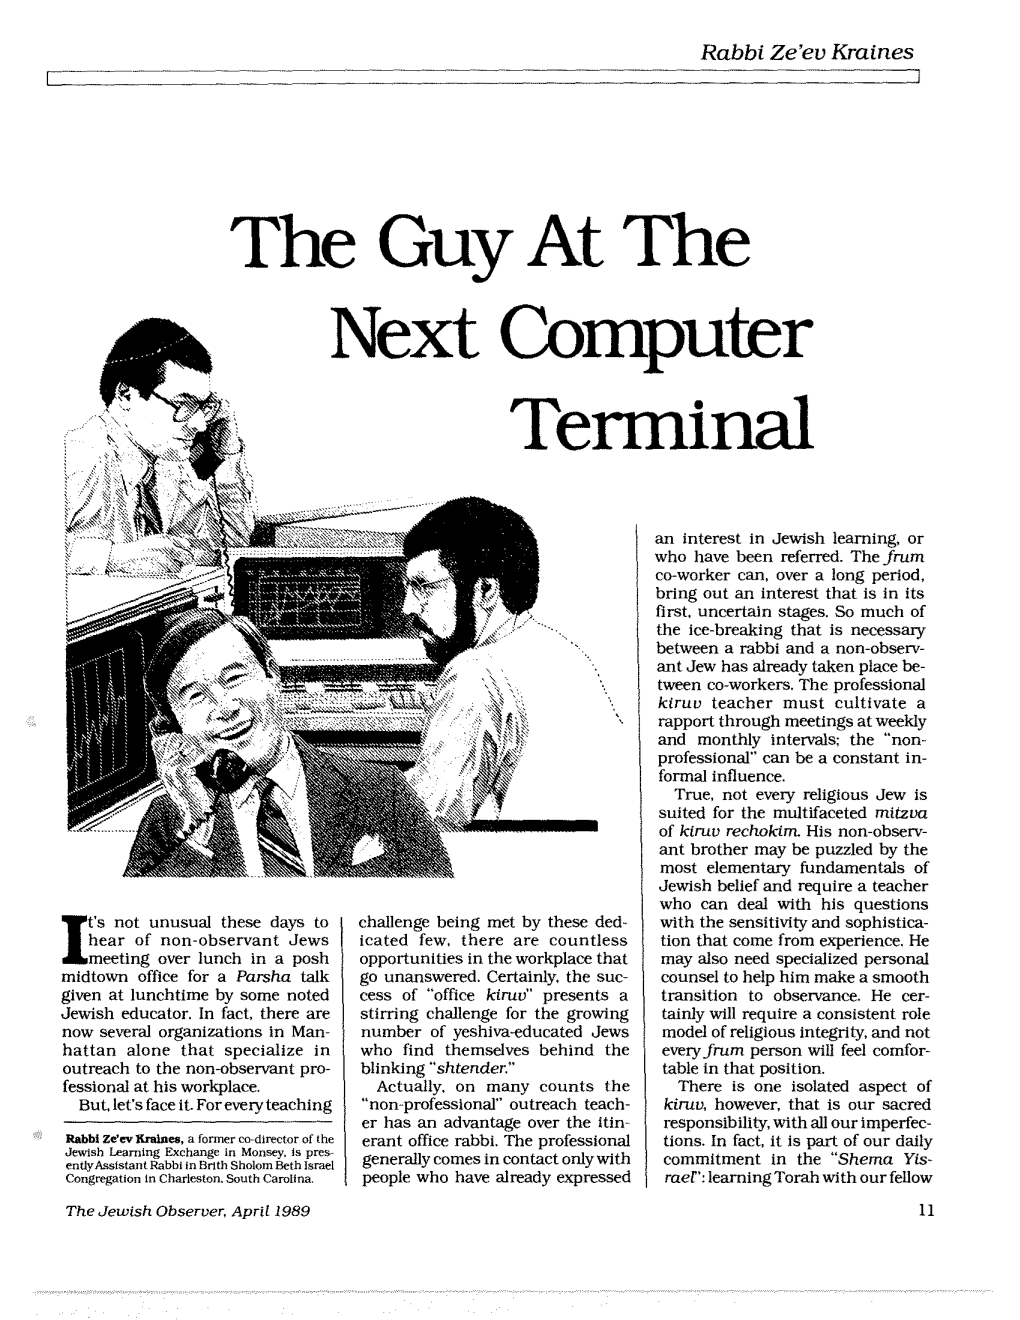 Next Computer Terminal